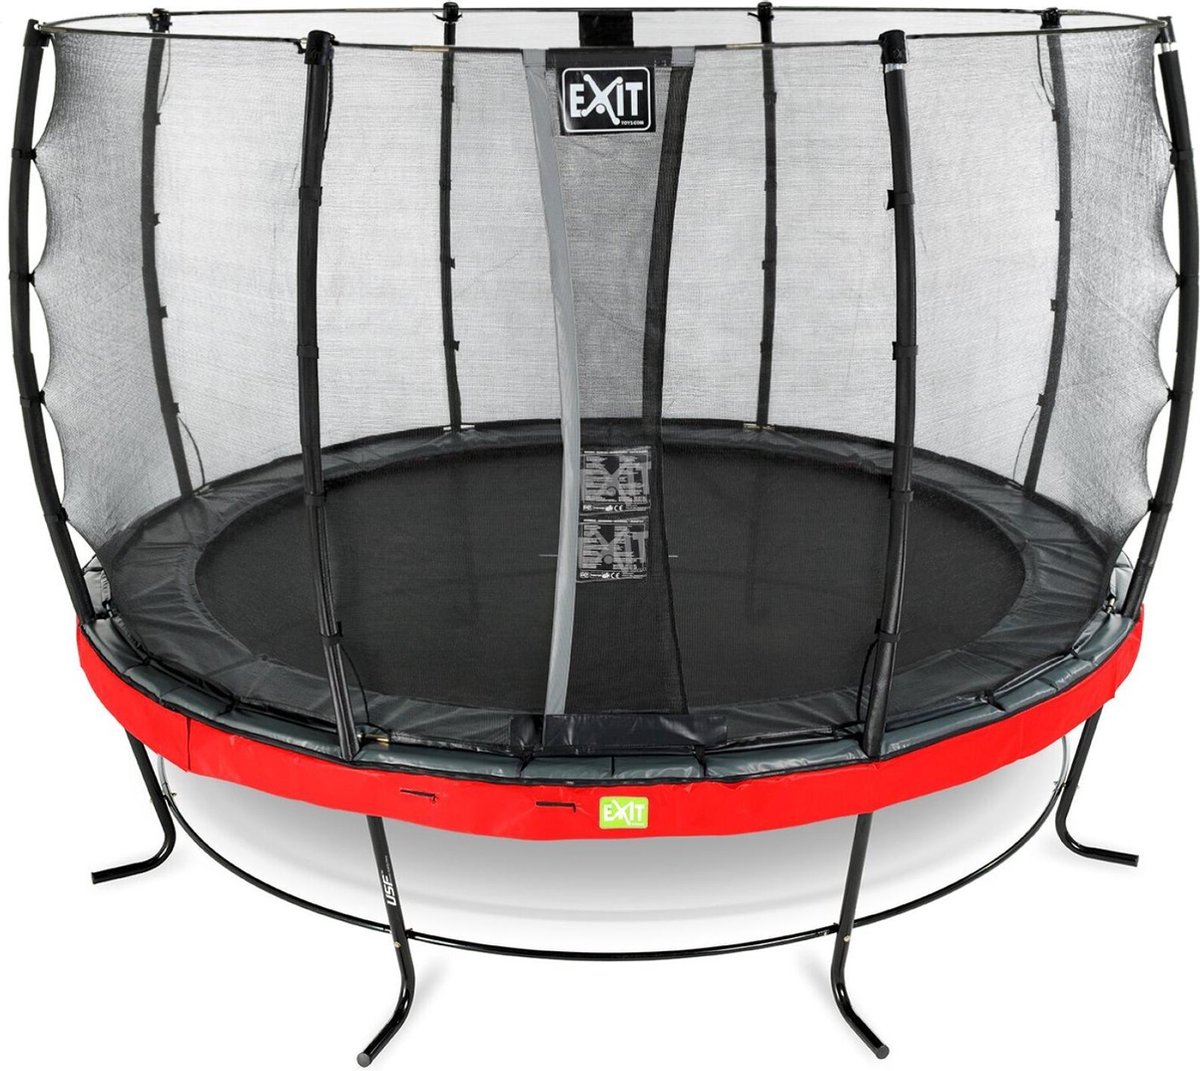 EXIT Elegant trampoline ø366cm met Economy veiligheidsnet - rood